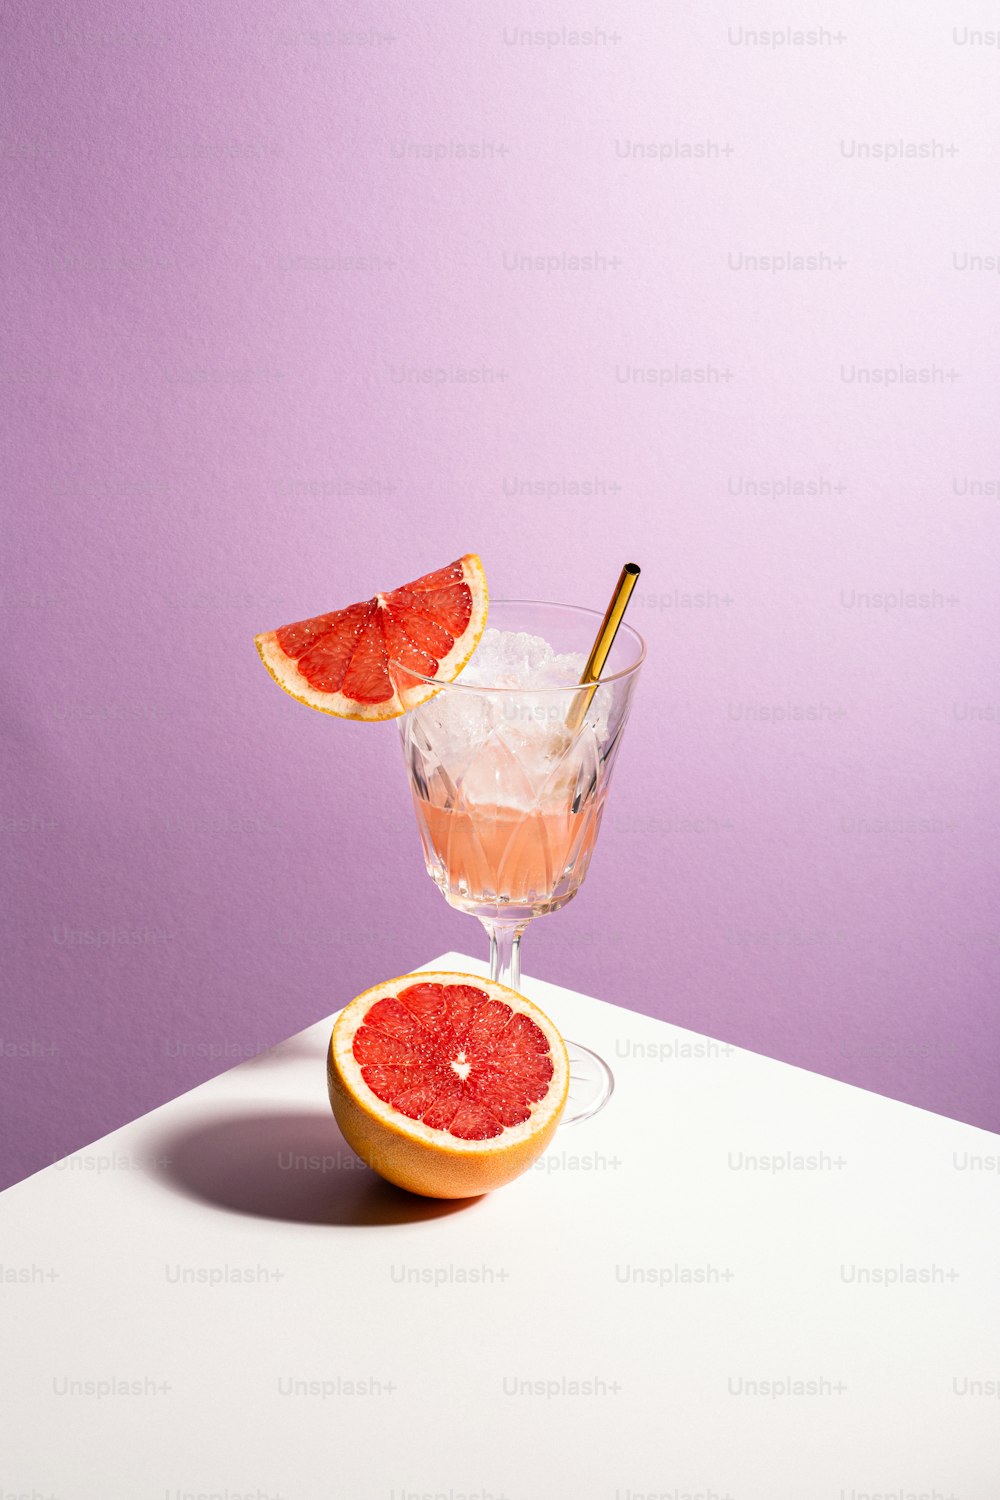 ein Grapefruit-Cocktail garniert mit einer Orangenscheibe